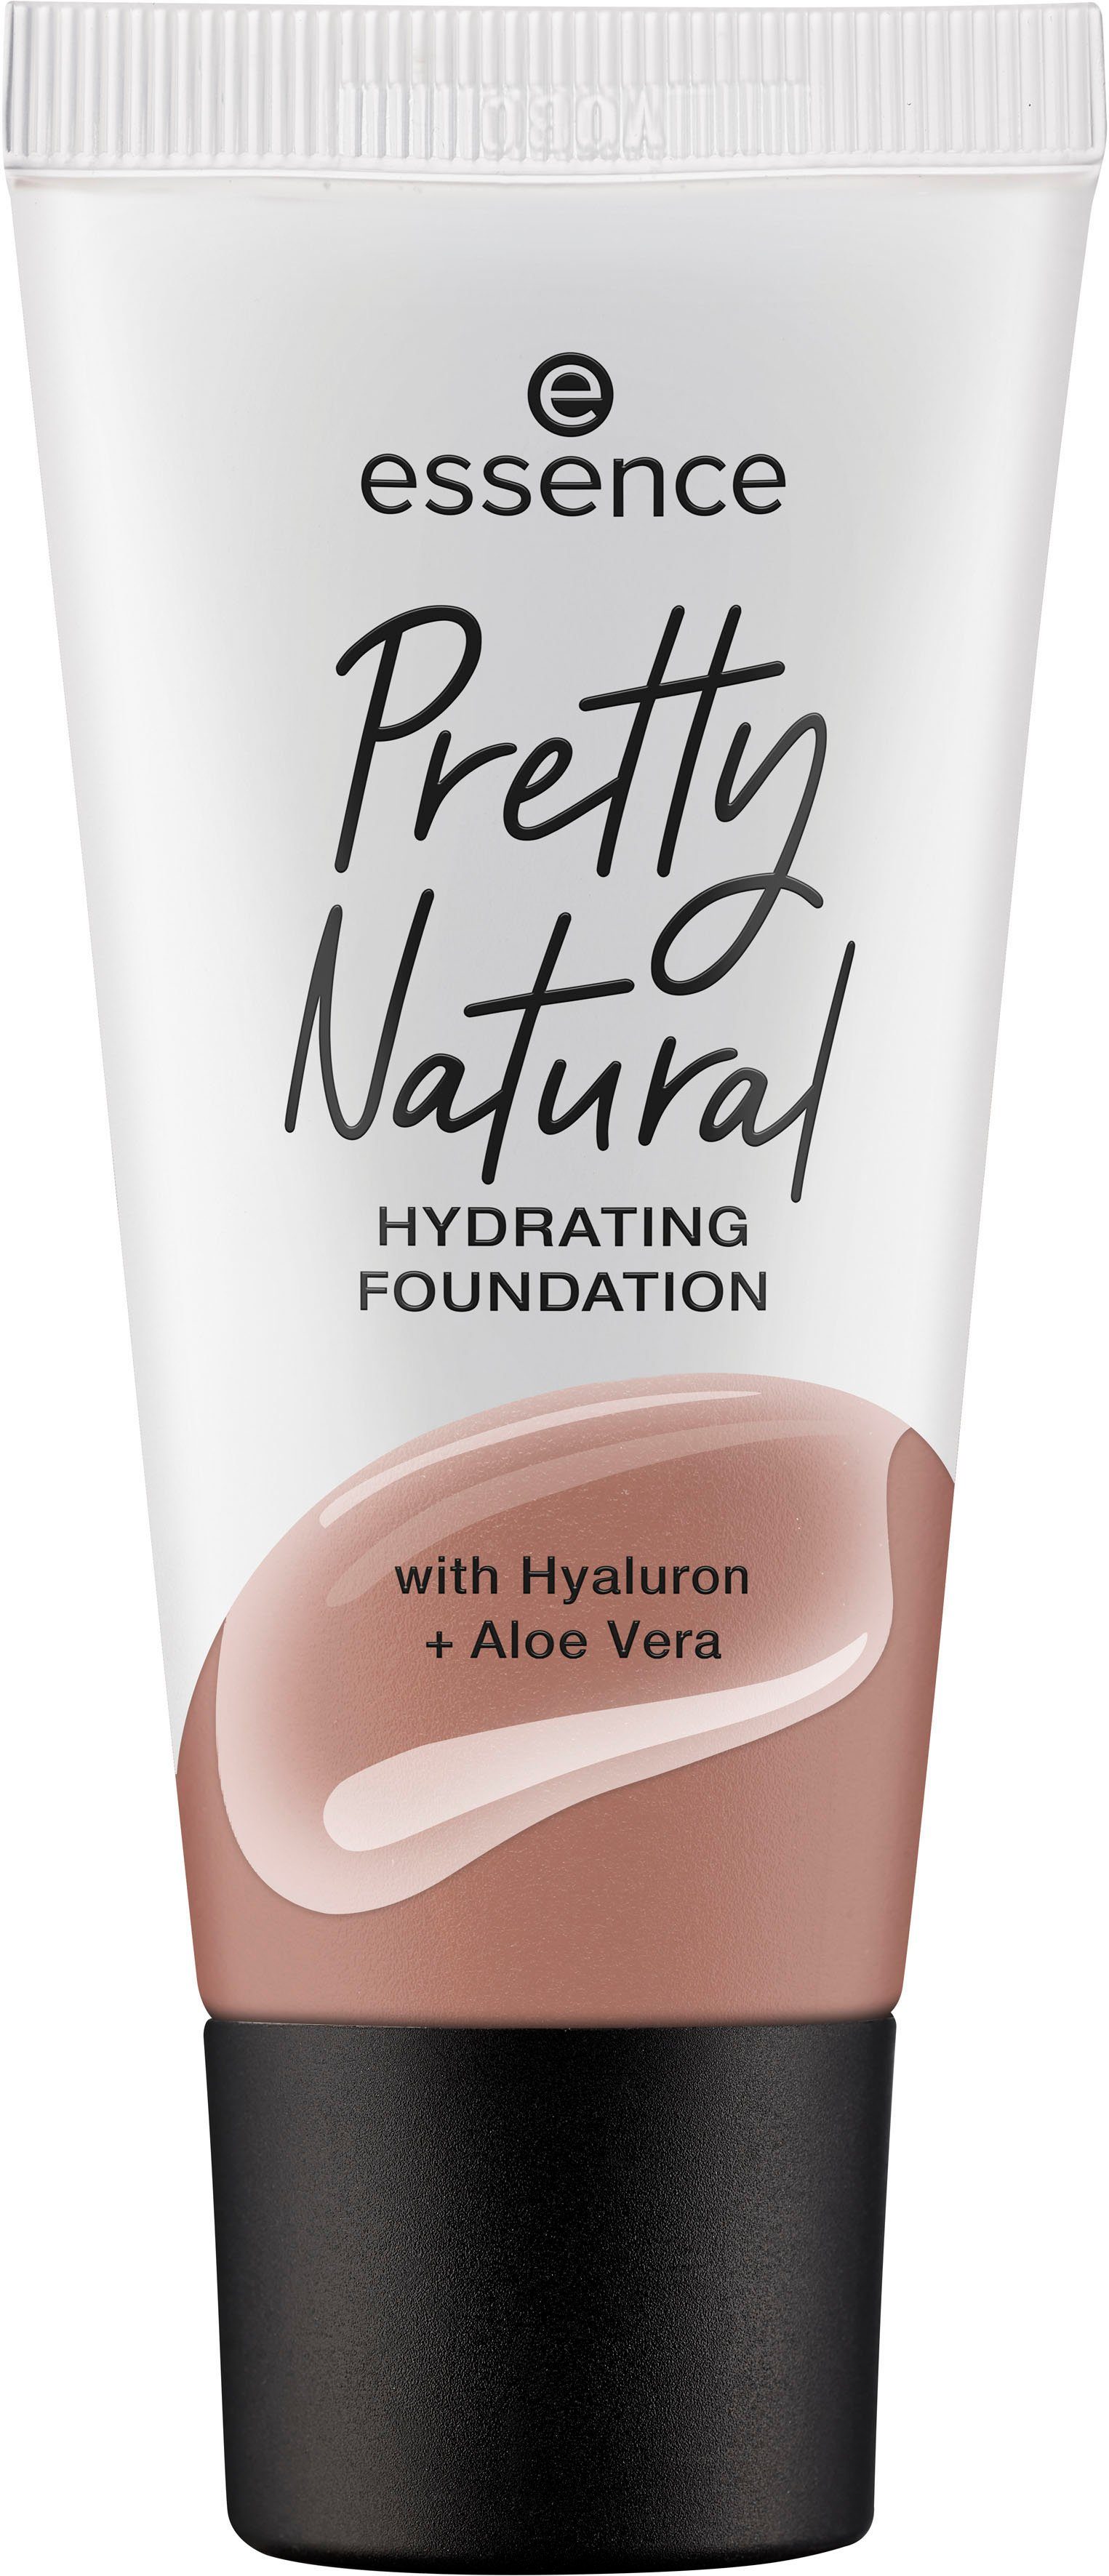 3-tlg. Cool Foundation Natural Ebony Pretty HYDRATING, Essence